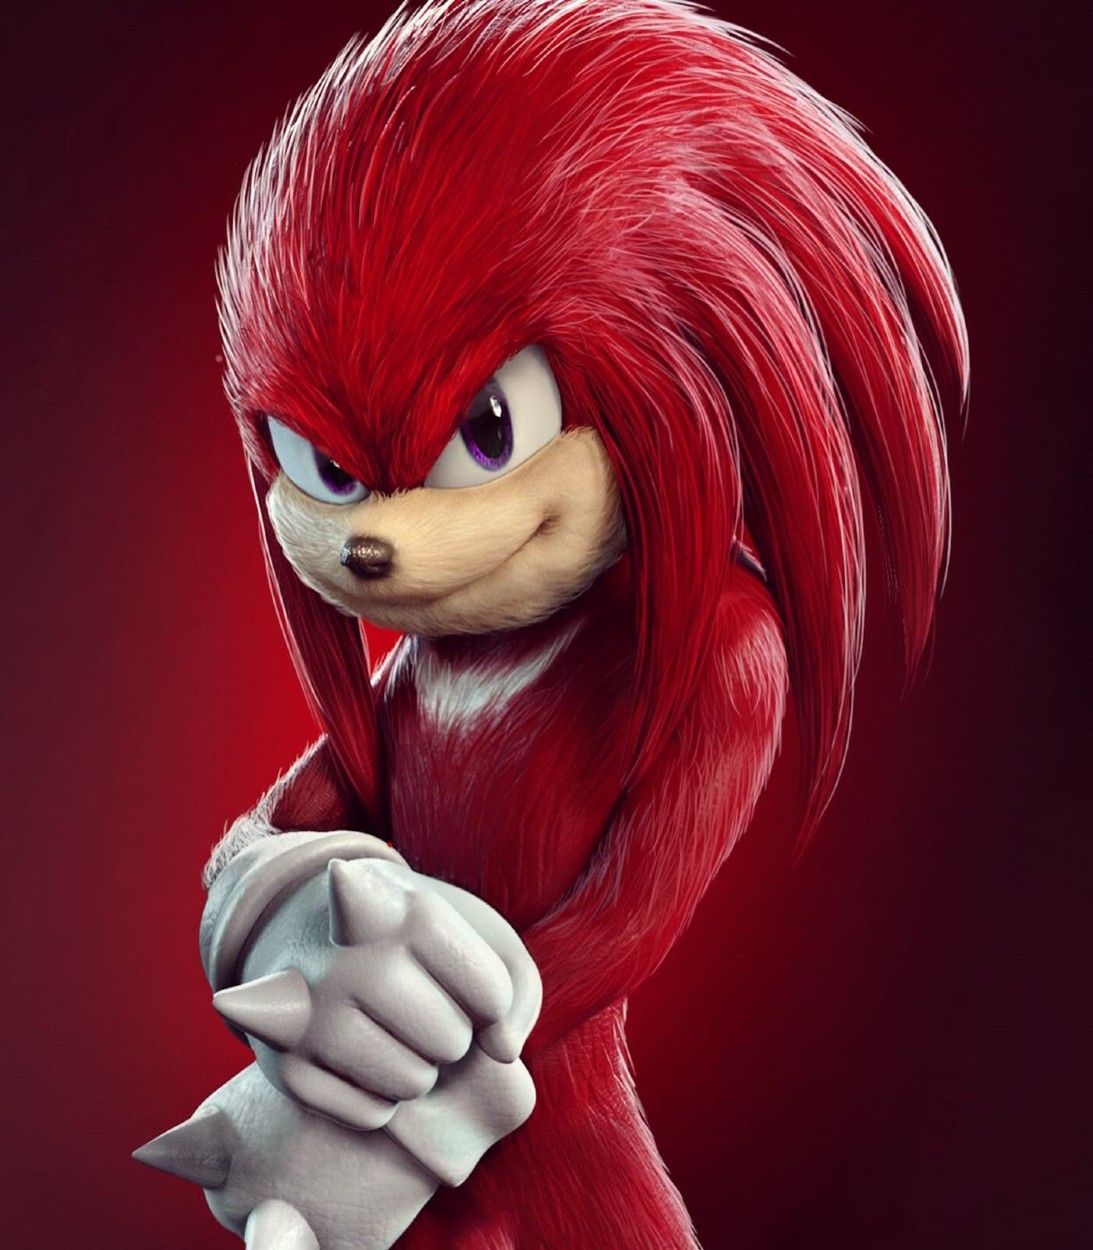 Sonic the Hedgehog Knuckles Fan Art by rafagrassetti Vertical